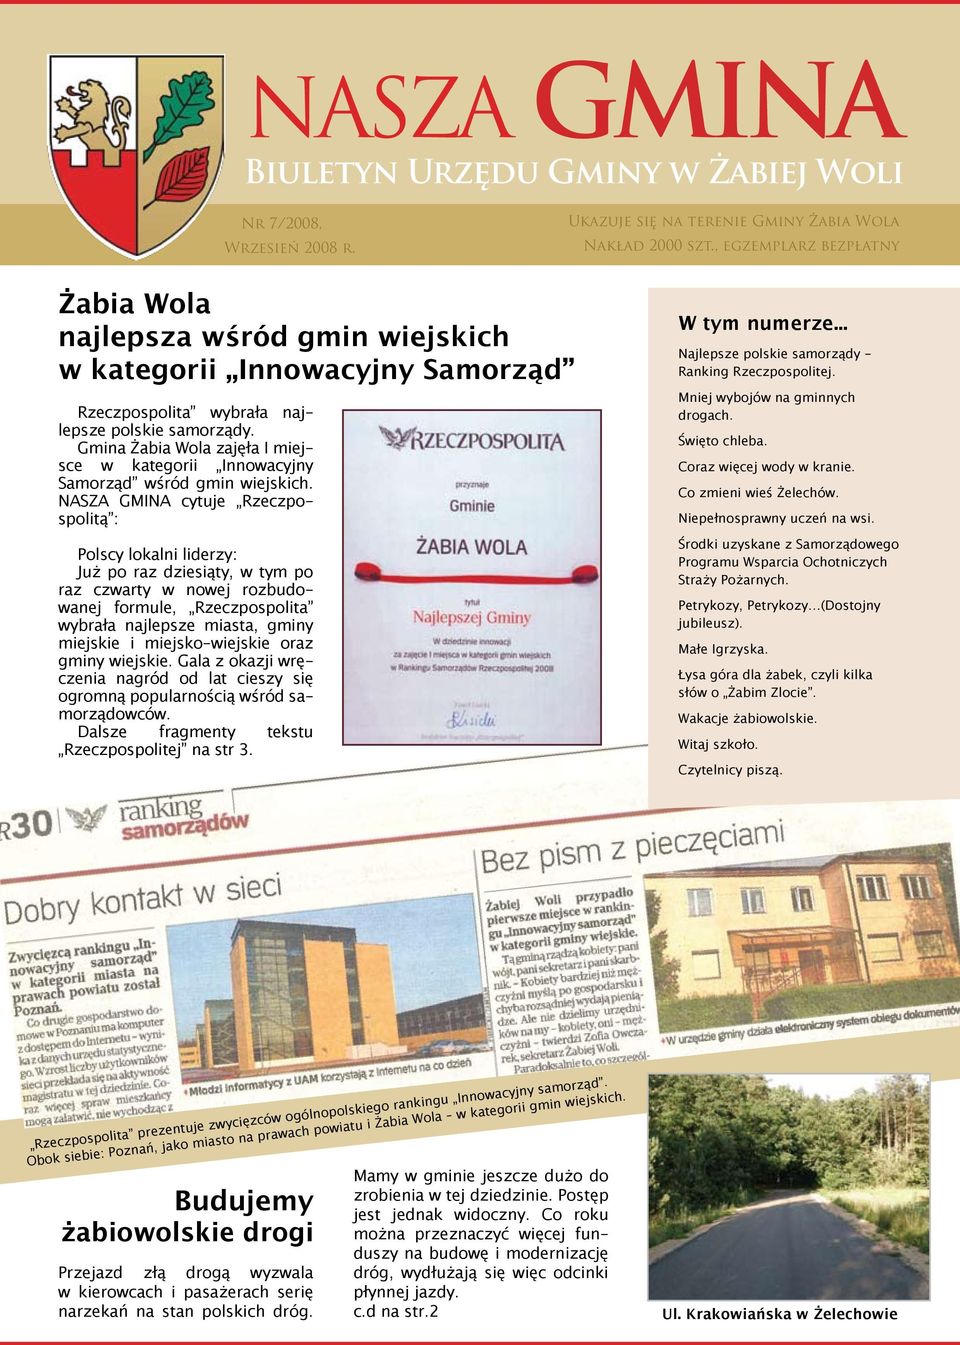 Gmina Żabia Wola zajęła I miejsce w kategorii Innowacyjny Samorząd wśród gmin wiejskich.